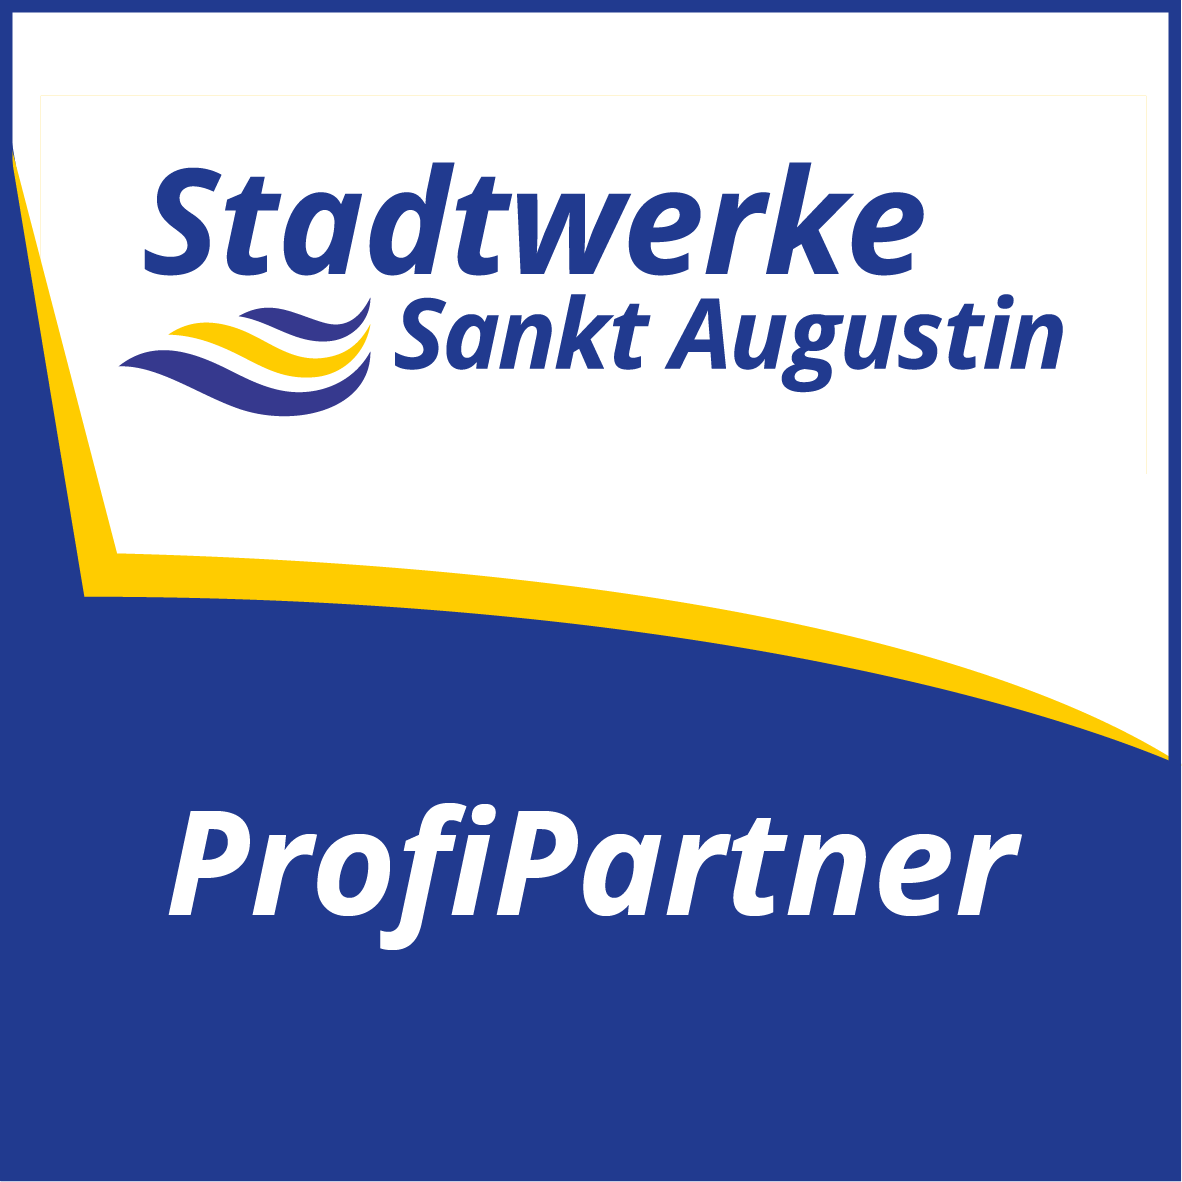 Profipartner Stadtwerke Sankt Augustin